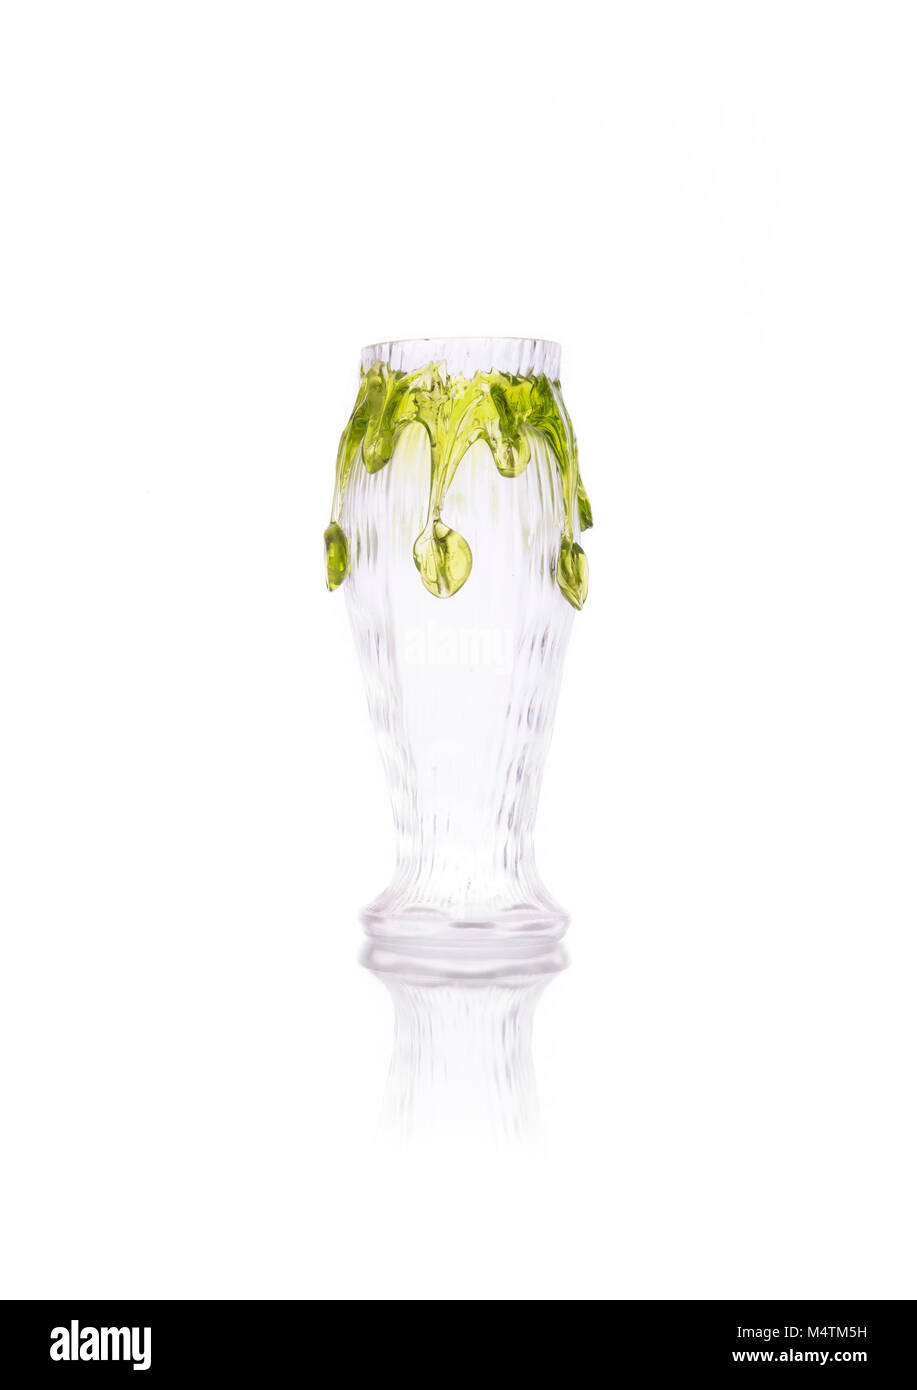 Antique glass vase isolated on white background Stock Photo